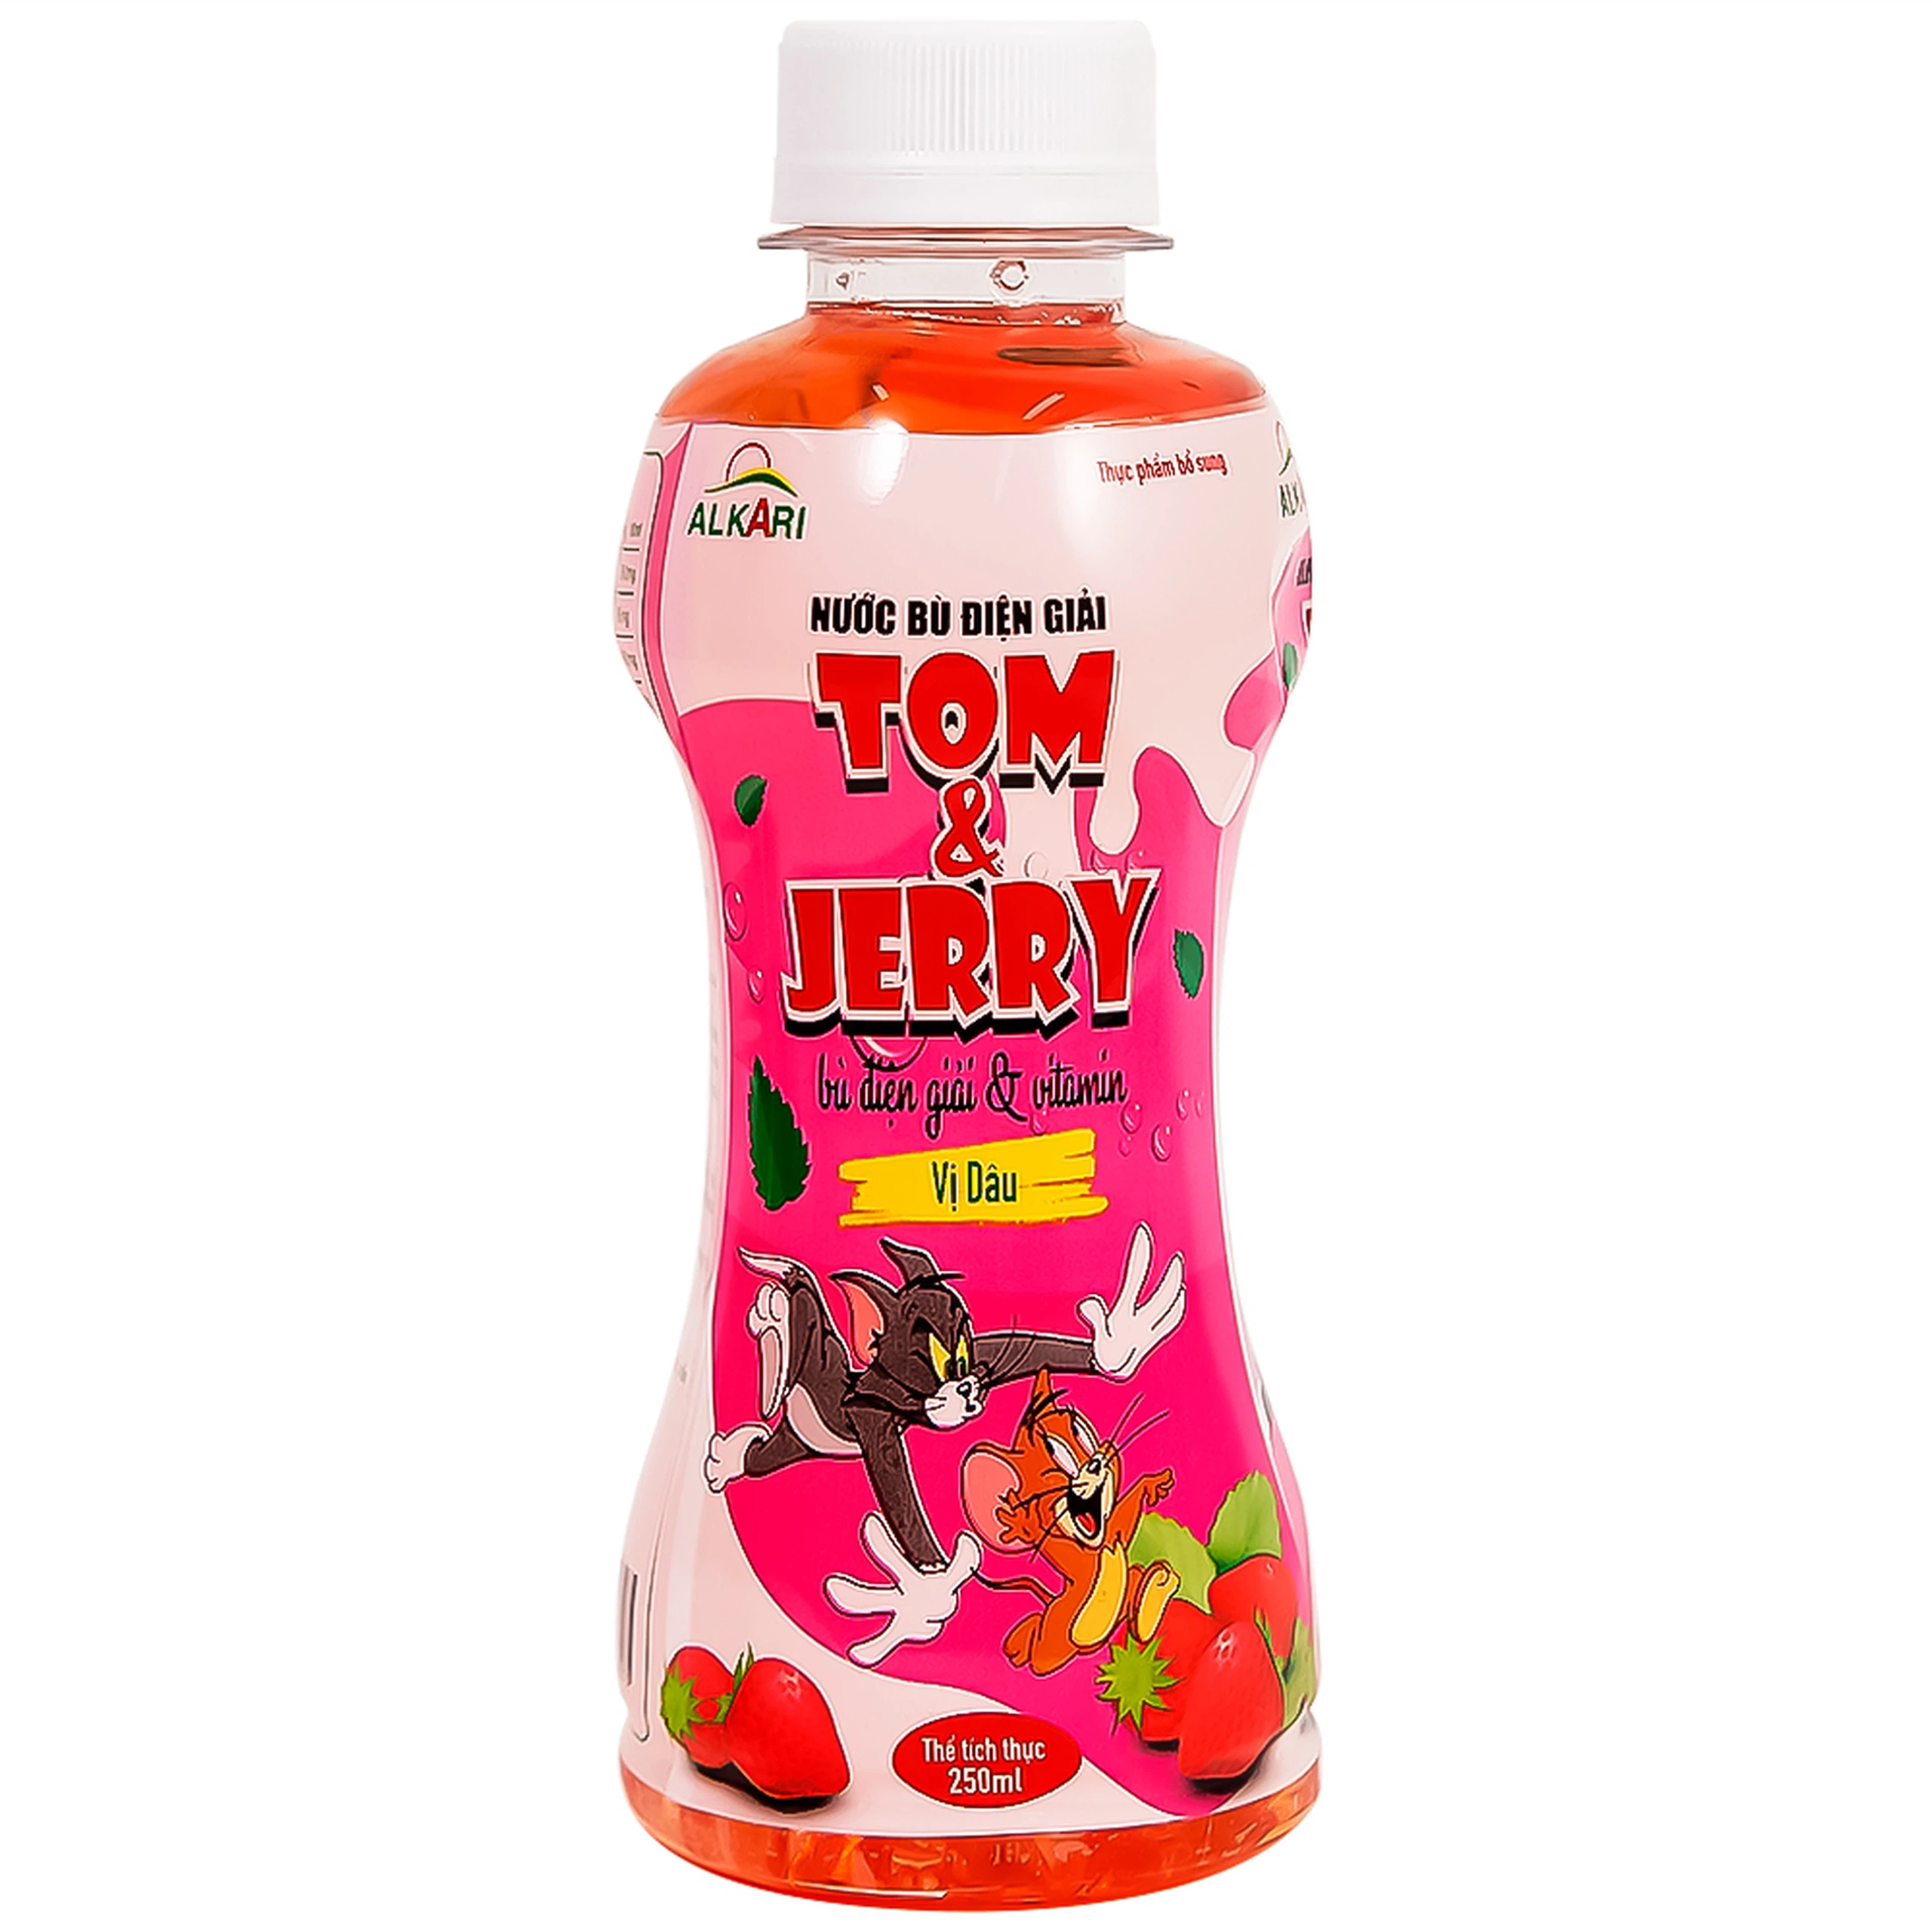 Nước bù điện giải Tom Và Jerry vị Dâu cung cấp năng lượng, vitamin cần thiết (250ml)